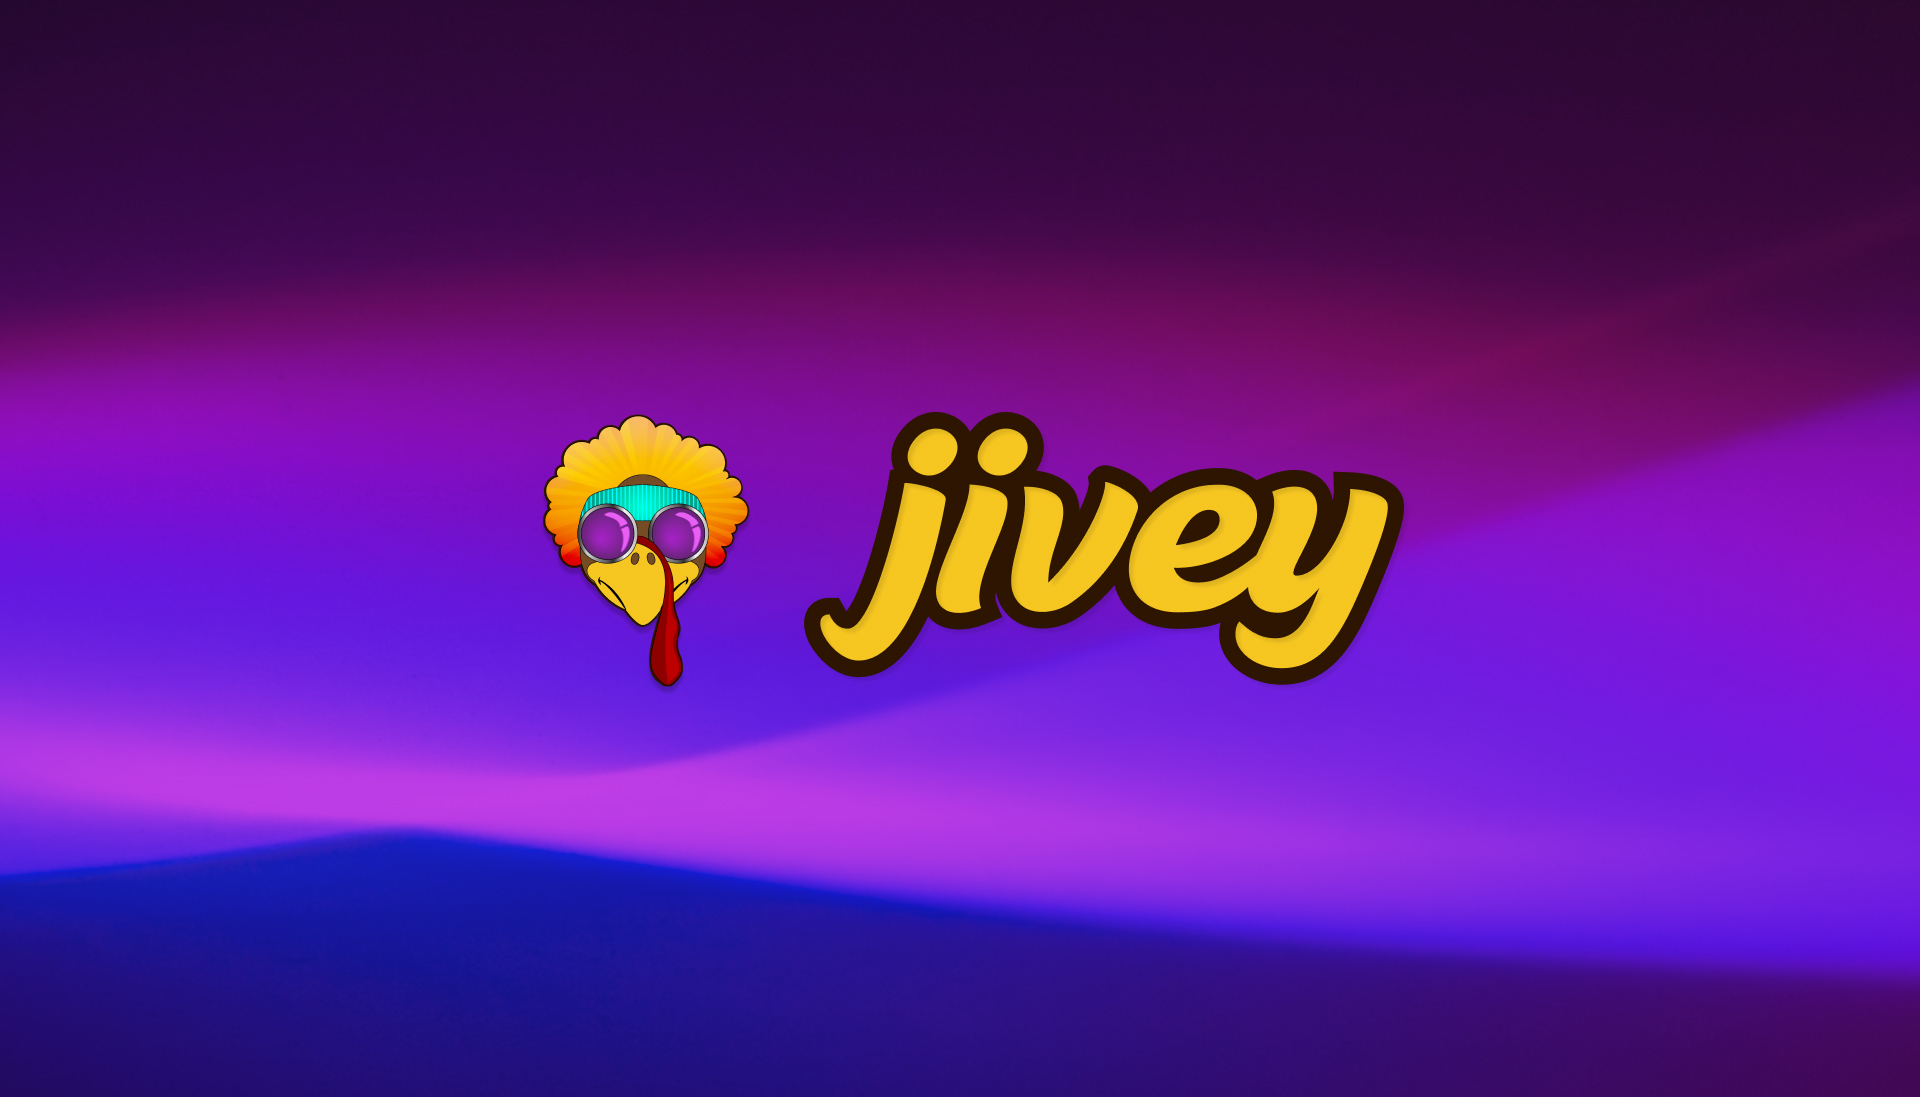 Jivey